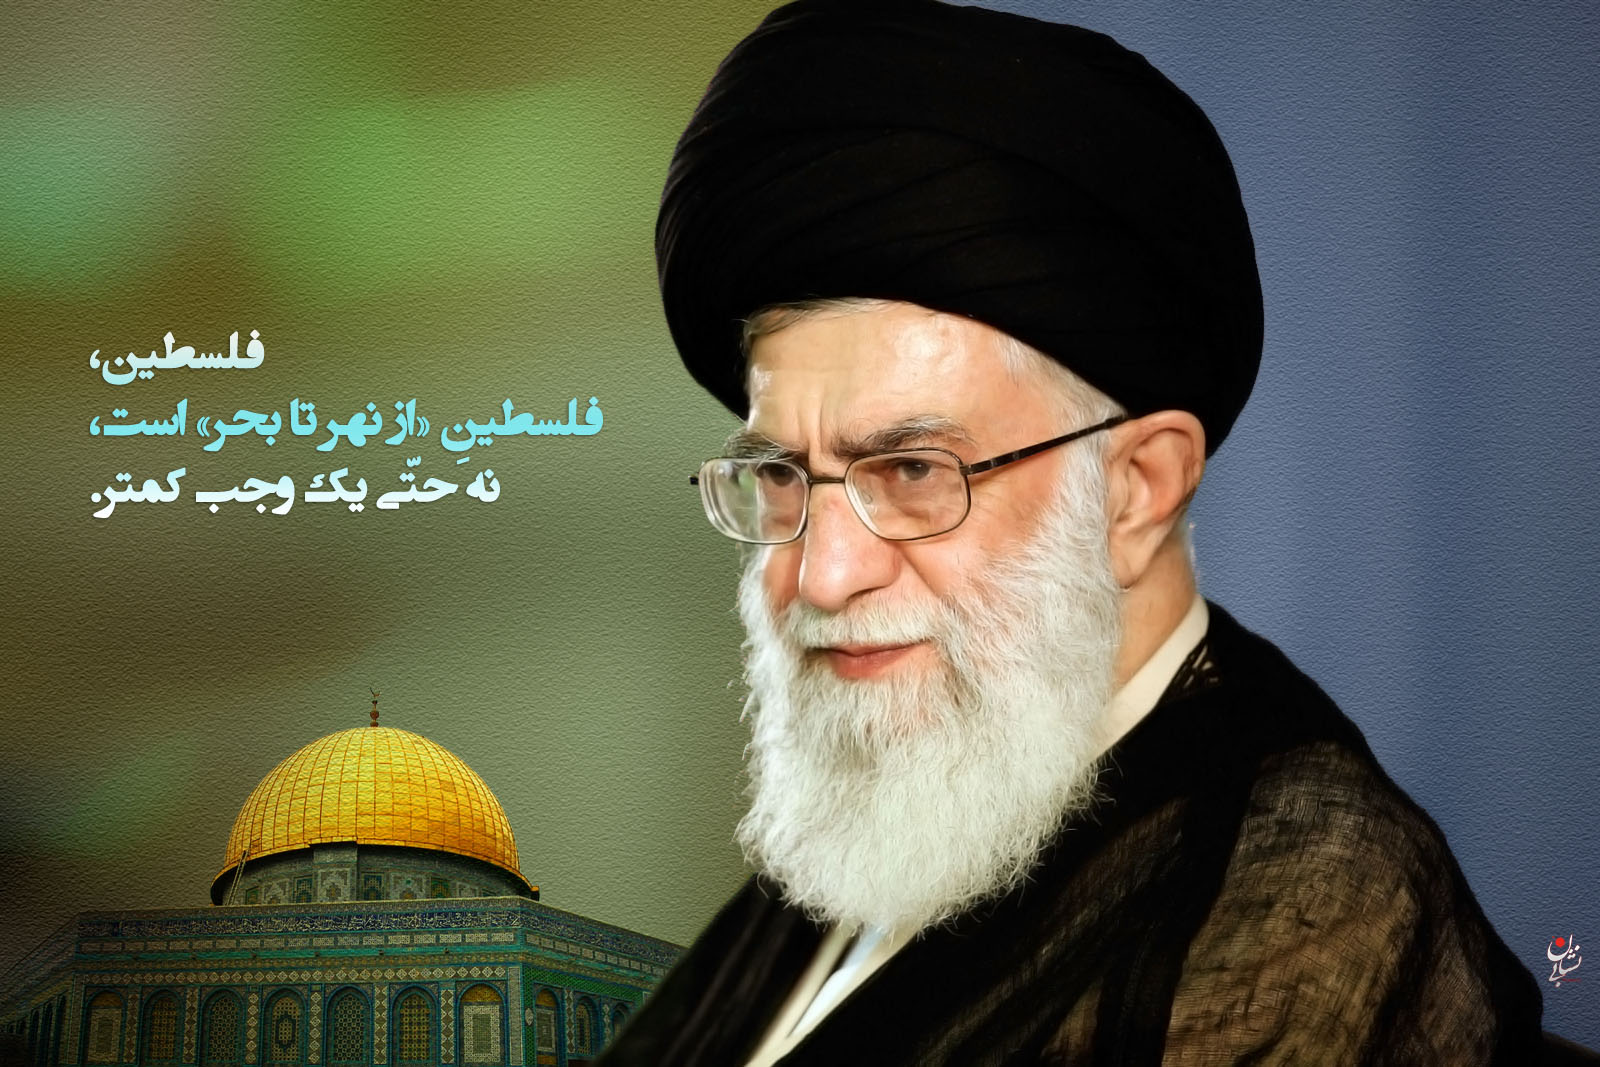 Послание палестинскому народу от Рахбара сейида Али Хаменеи в связи с поражением сионистского режима